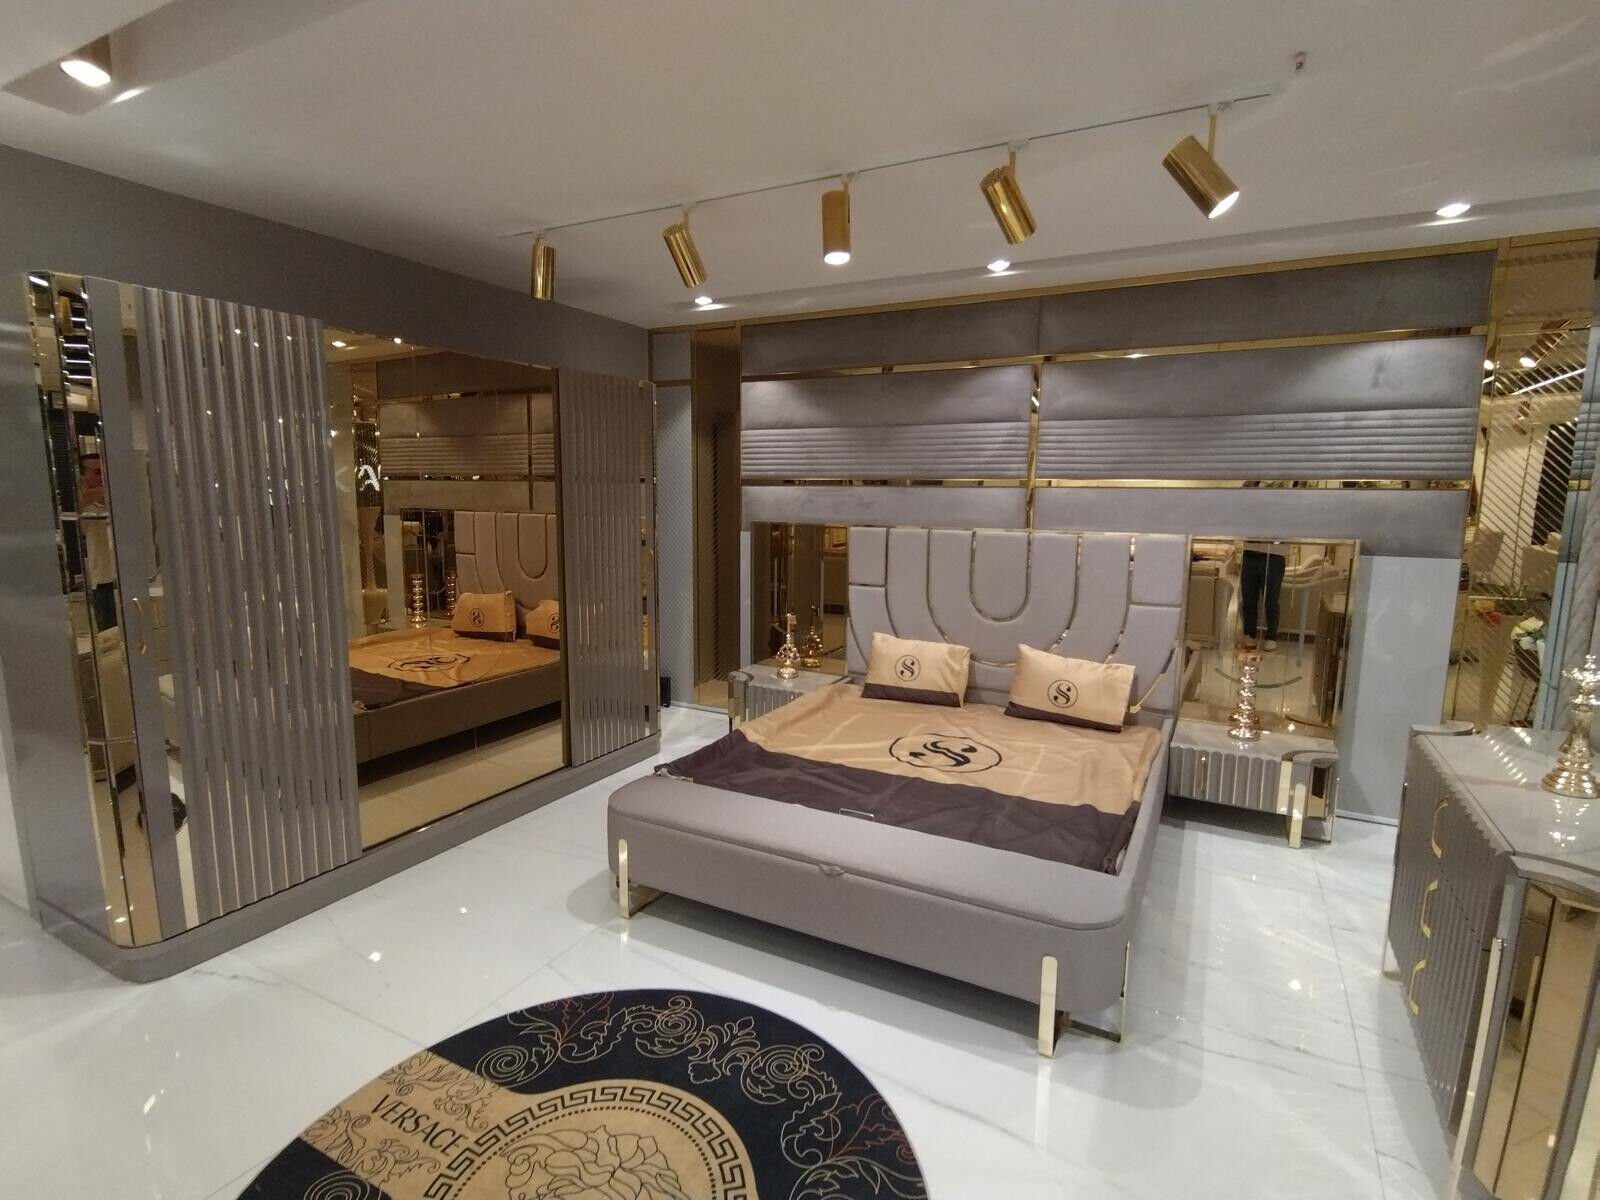 2x Schlafzimmer-Set JVmoebel Bett Luxus Schlafzimmer 3tlg. 2x Bett Europa Betten in Nachttische), (3-St., Made Set, + Nachttische Design Modern